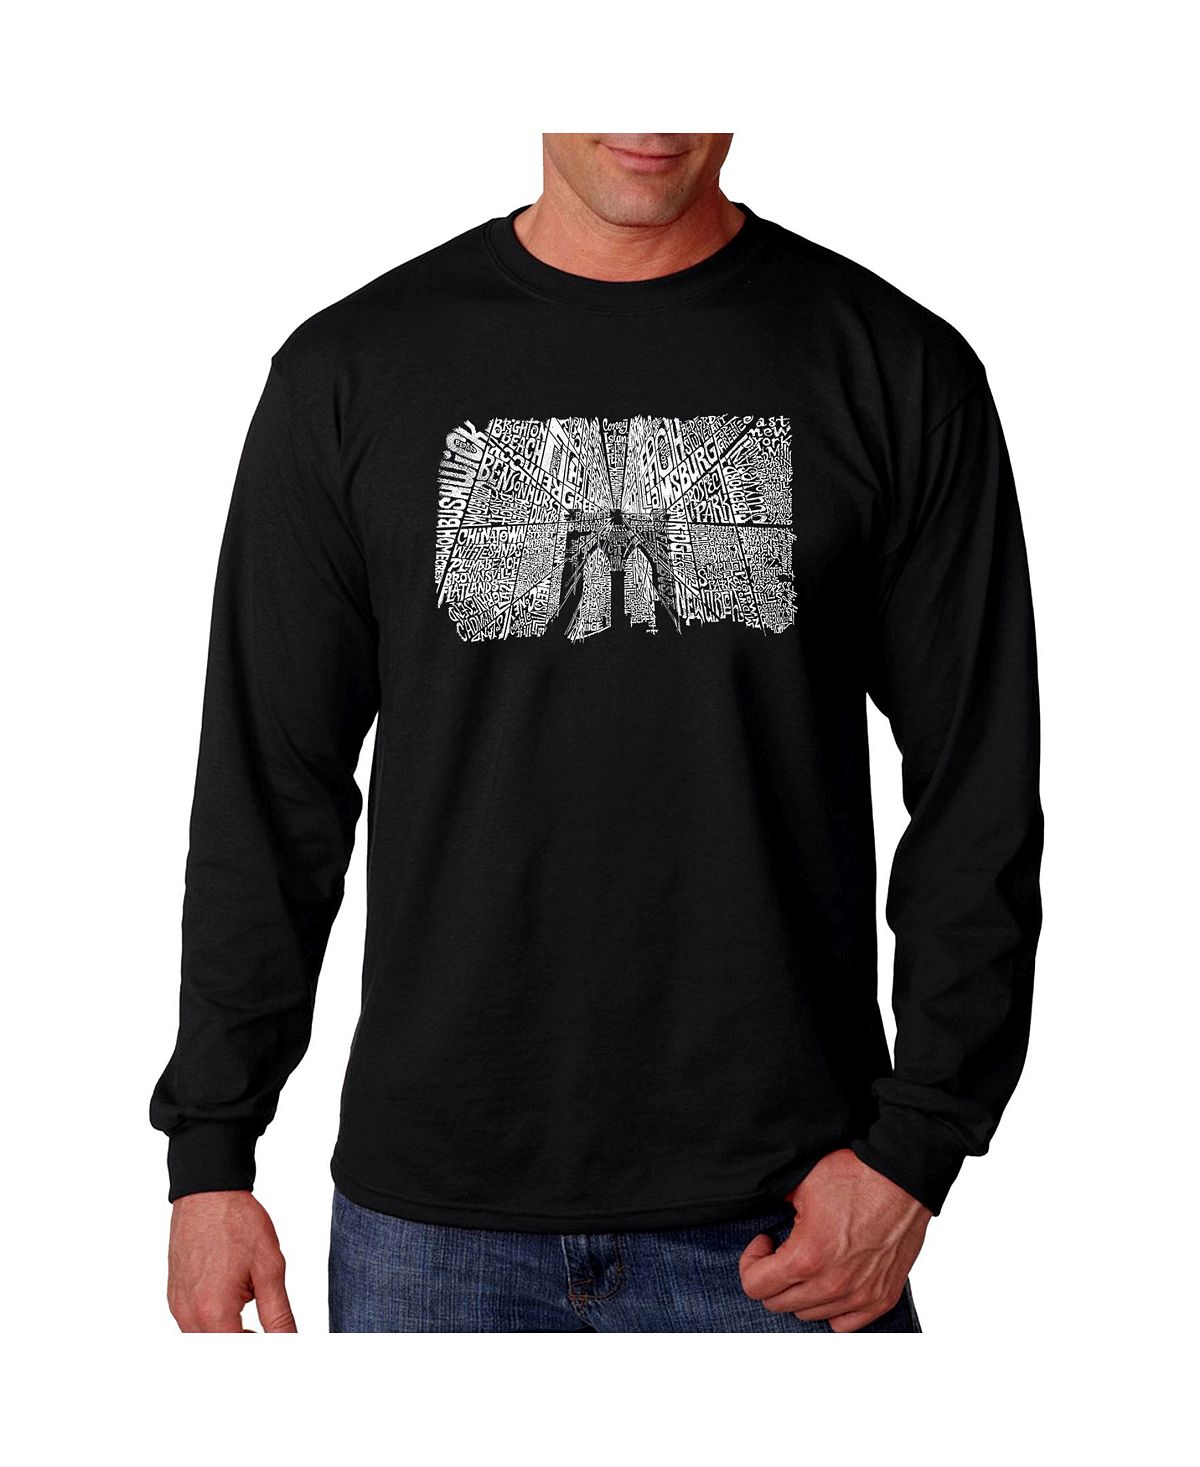 Мужская футболка с длинным рукавом word art - brooklyn bridge LA Pop Art, черный